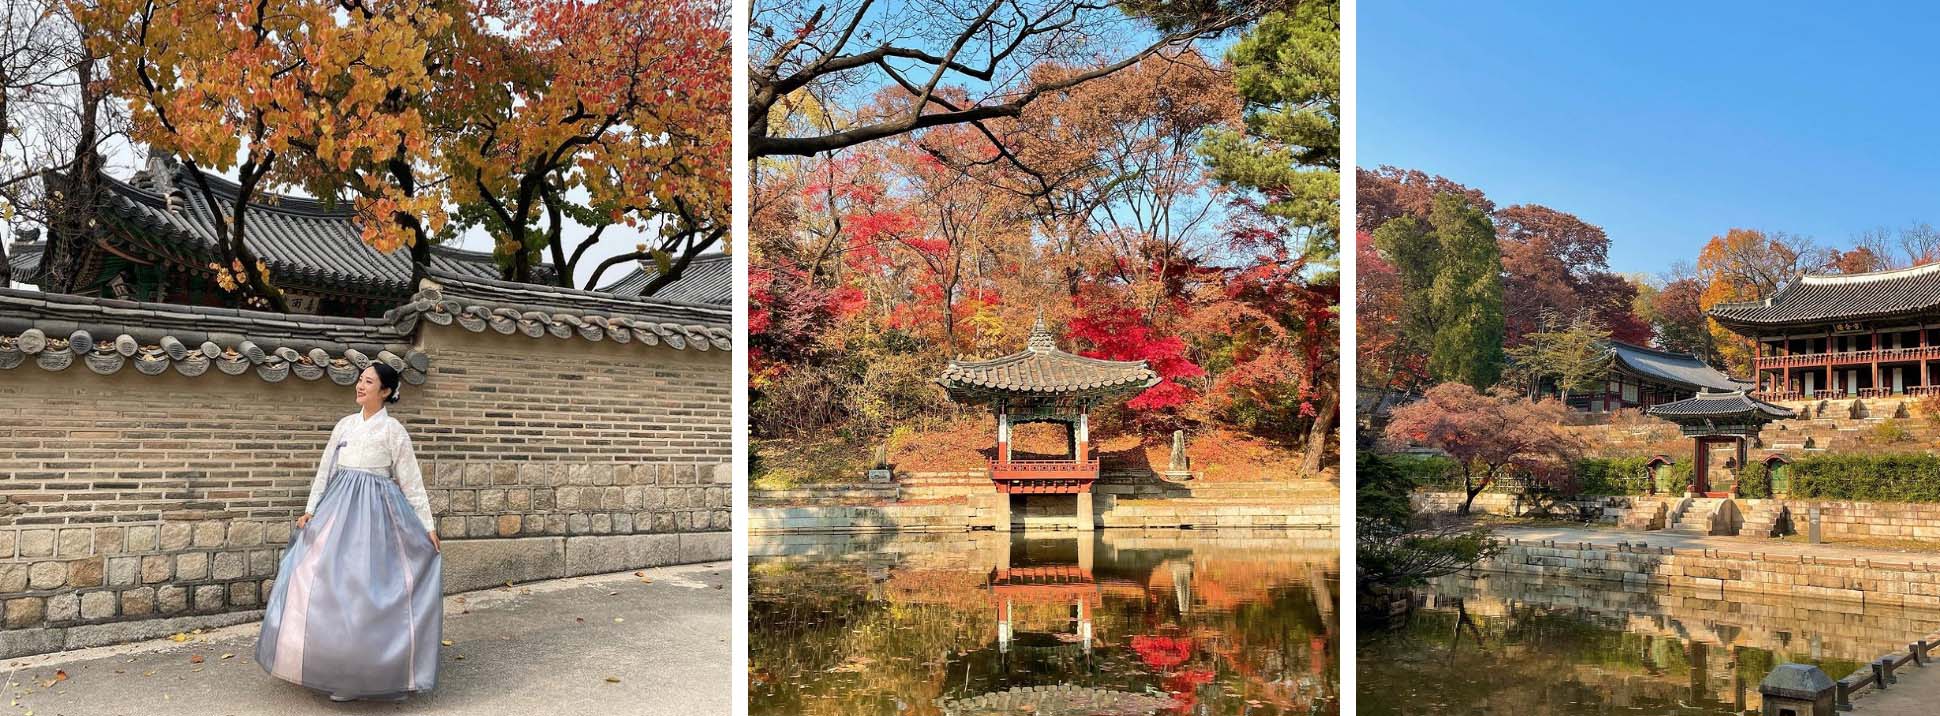 Top 6 địa điểm tận hưởng mùa thu, ngắm lá vàng rơi lãng mạn ở Hàn Quốc - Ảnh 7.